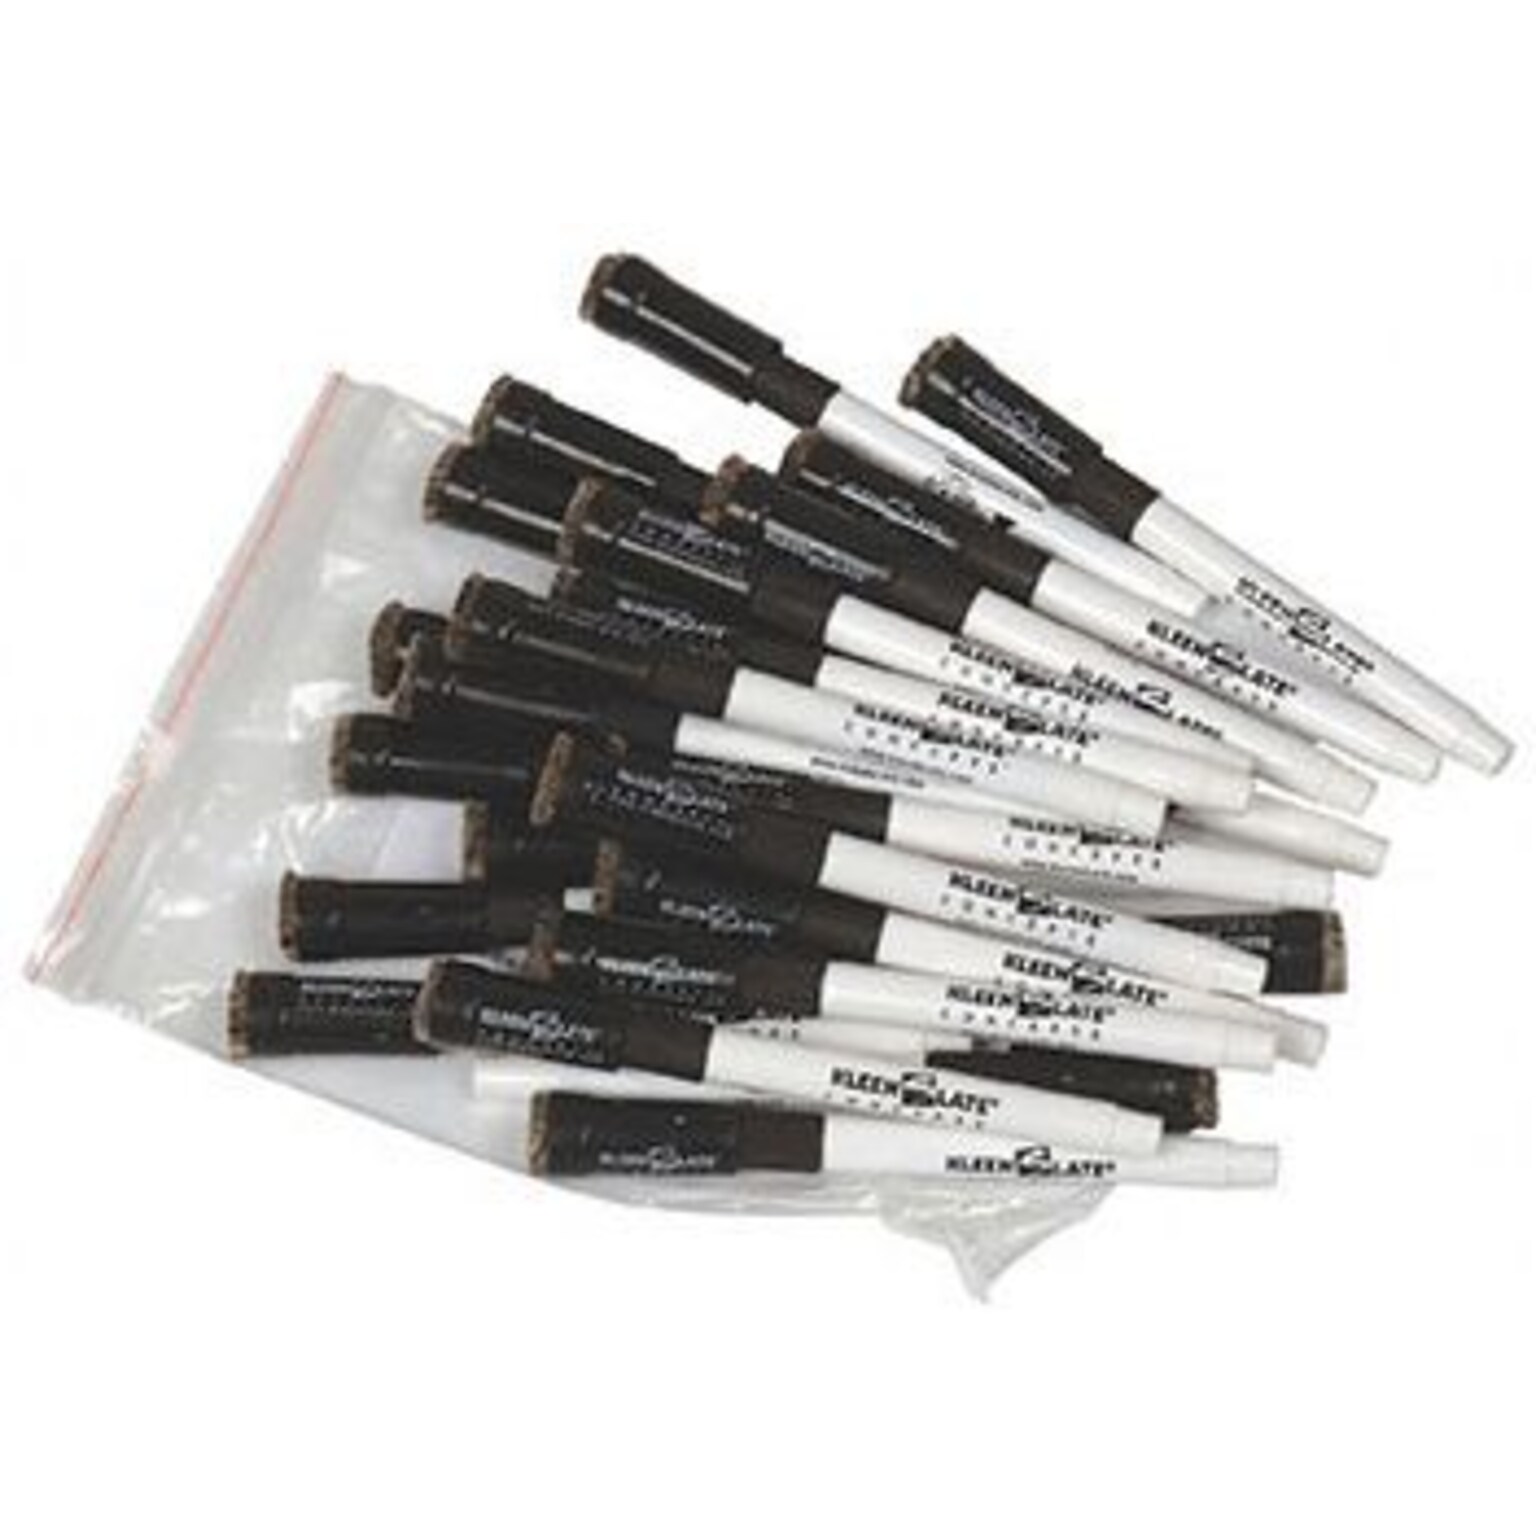 KleenSlate Dry Erase Markers, Bullet Tip, Black, 24/Pack (KLS43324)